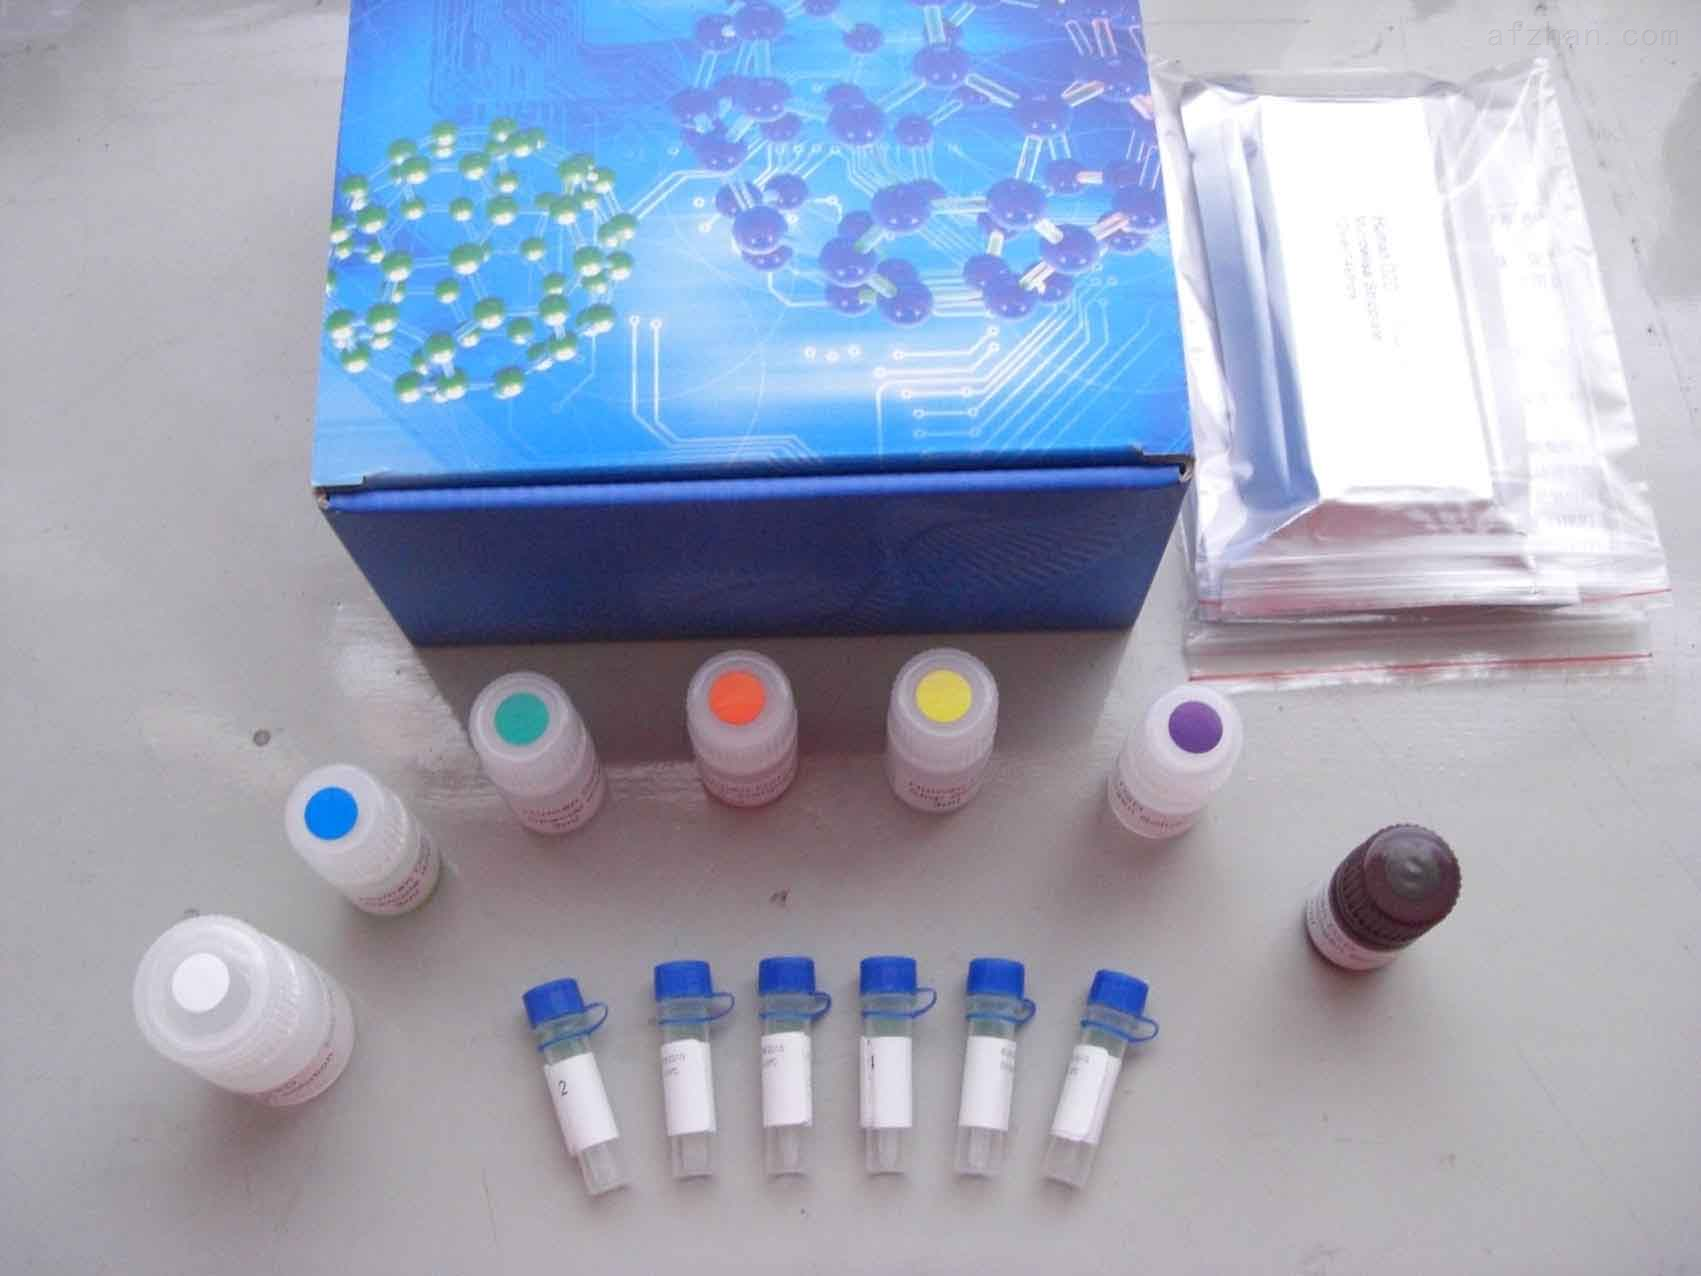 人促胃液素受体(GsaR)检测试剂盒